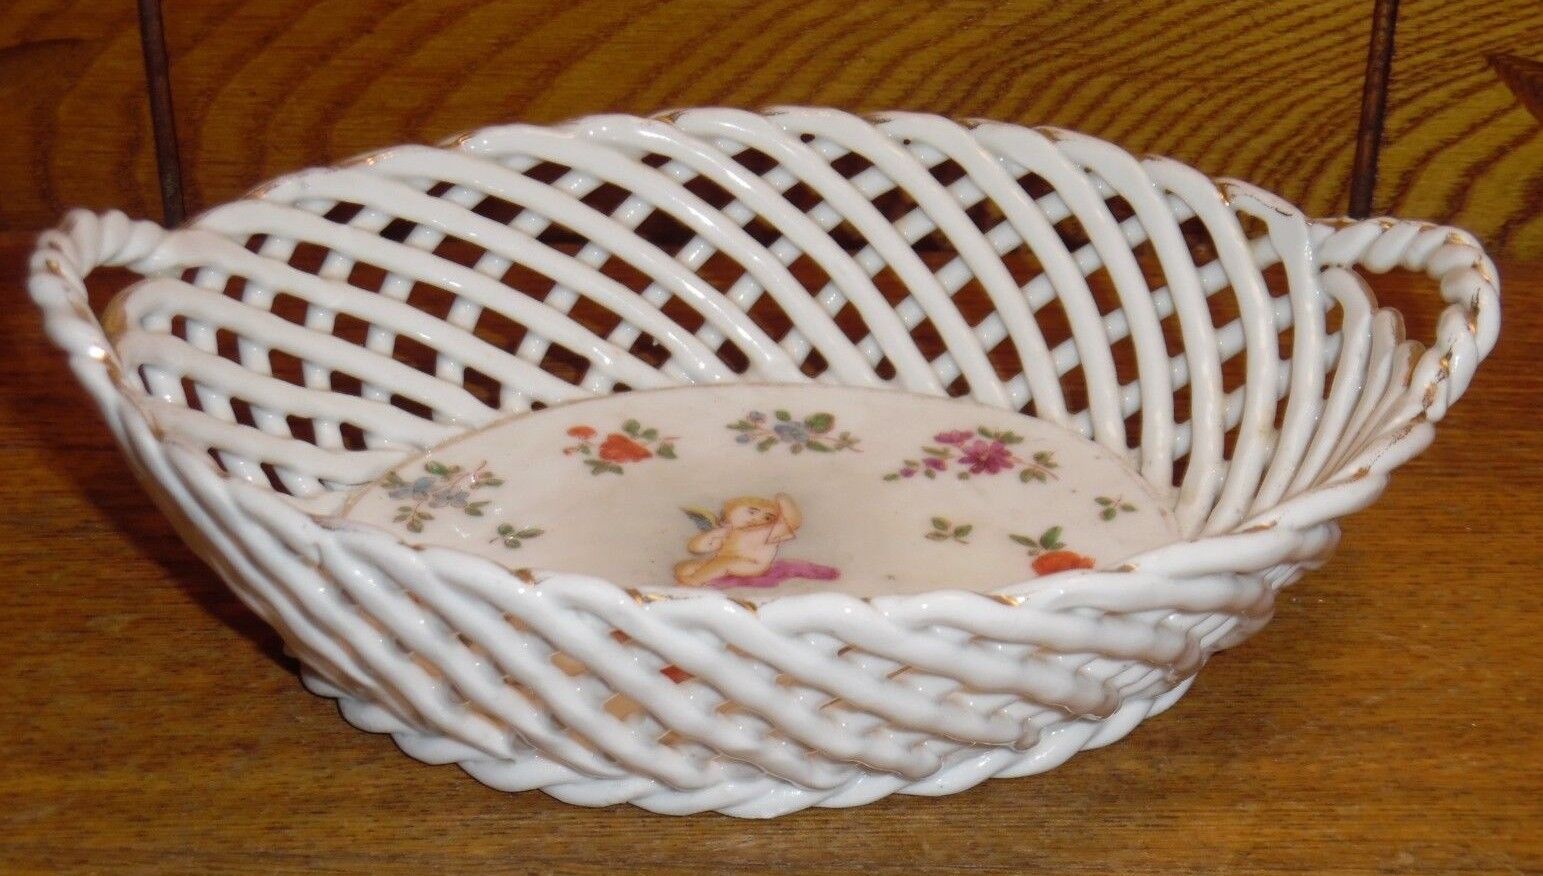 Vintage / Old Porcelain Basket Bowl w/ Cherub & Flower Decoration - 7 1/8\